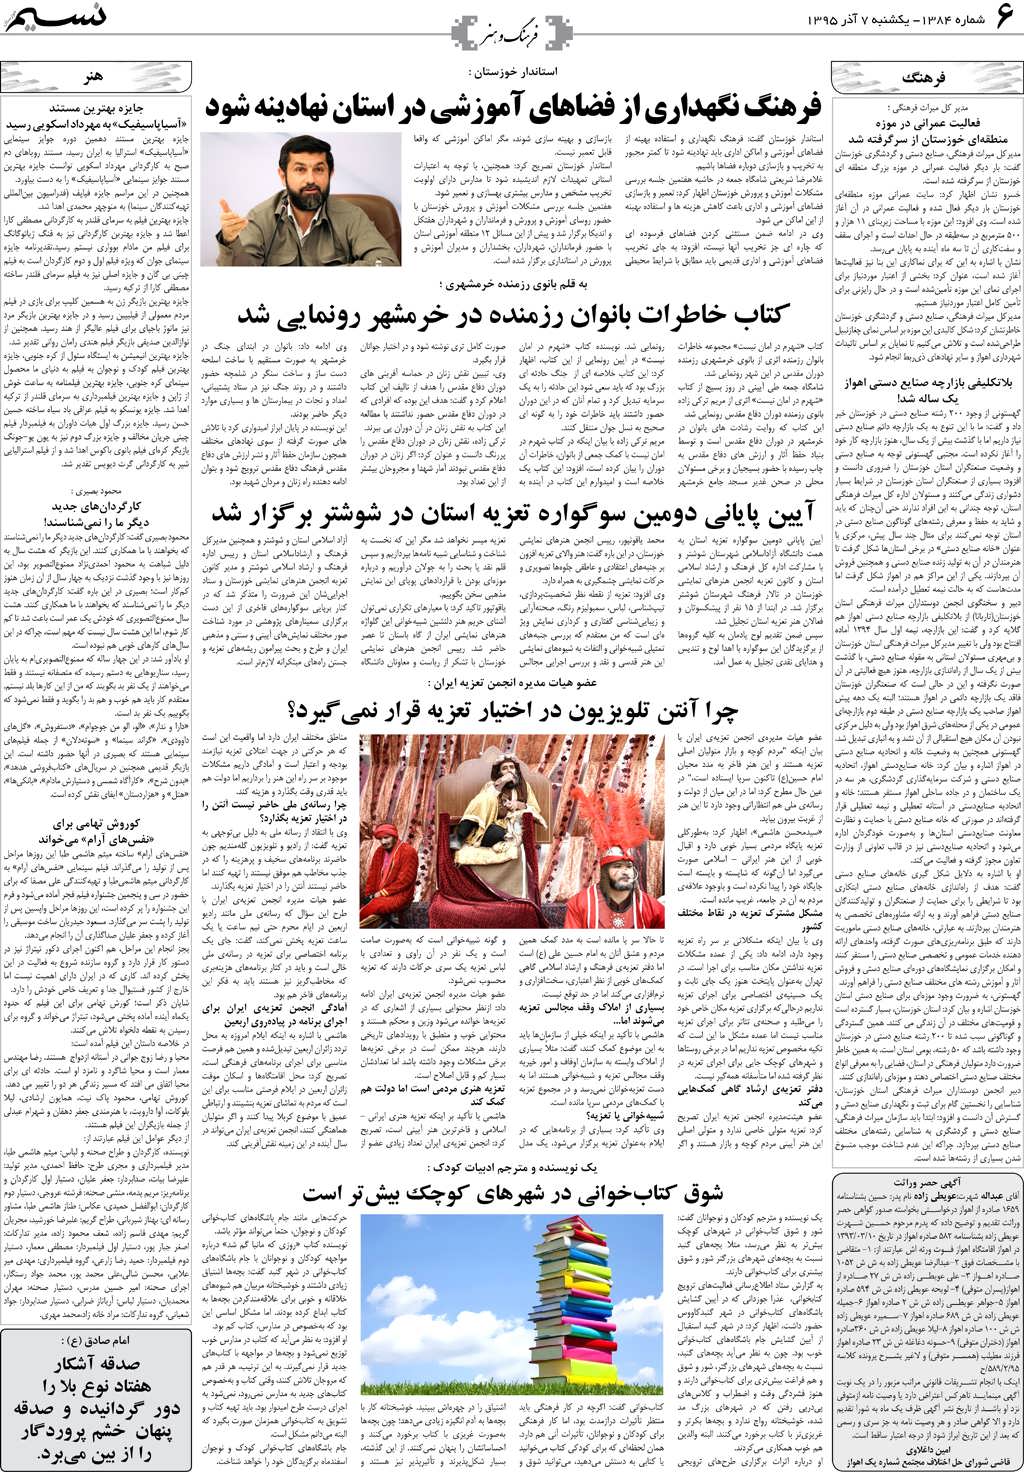 صفحه فرهنگ و هنر روزنامه نسیم شماره 1384